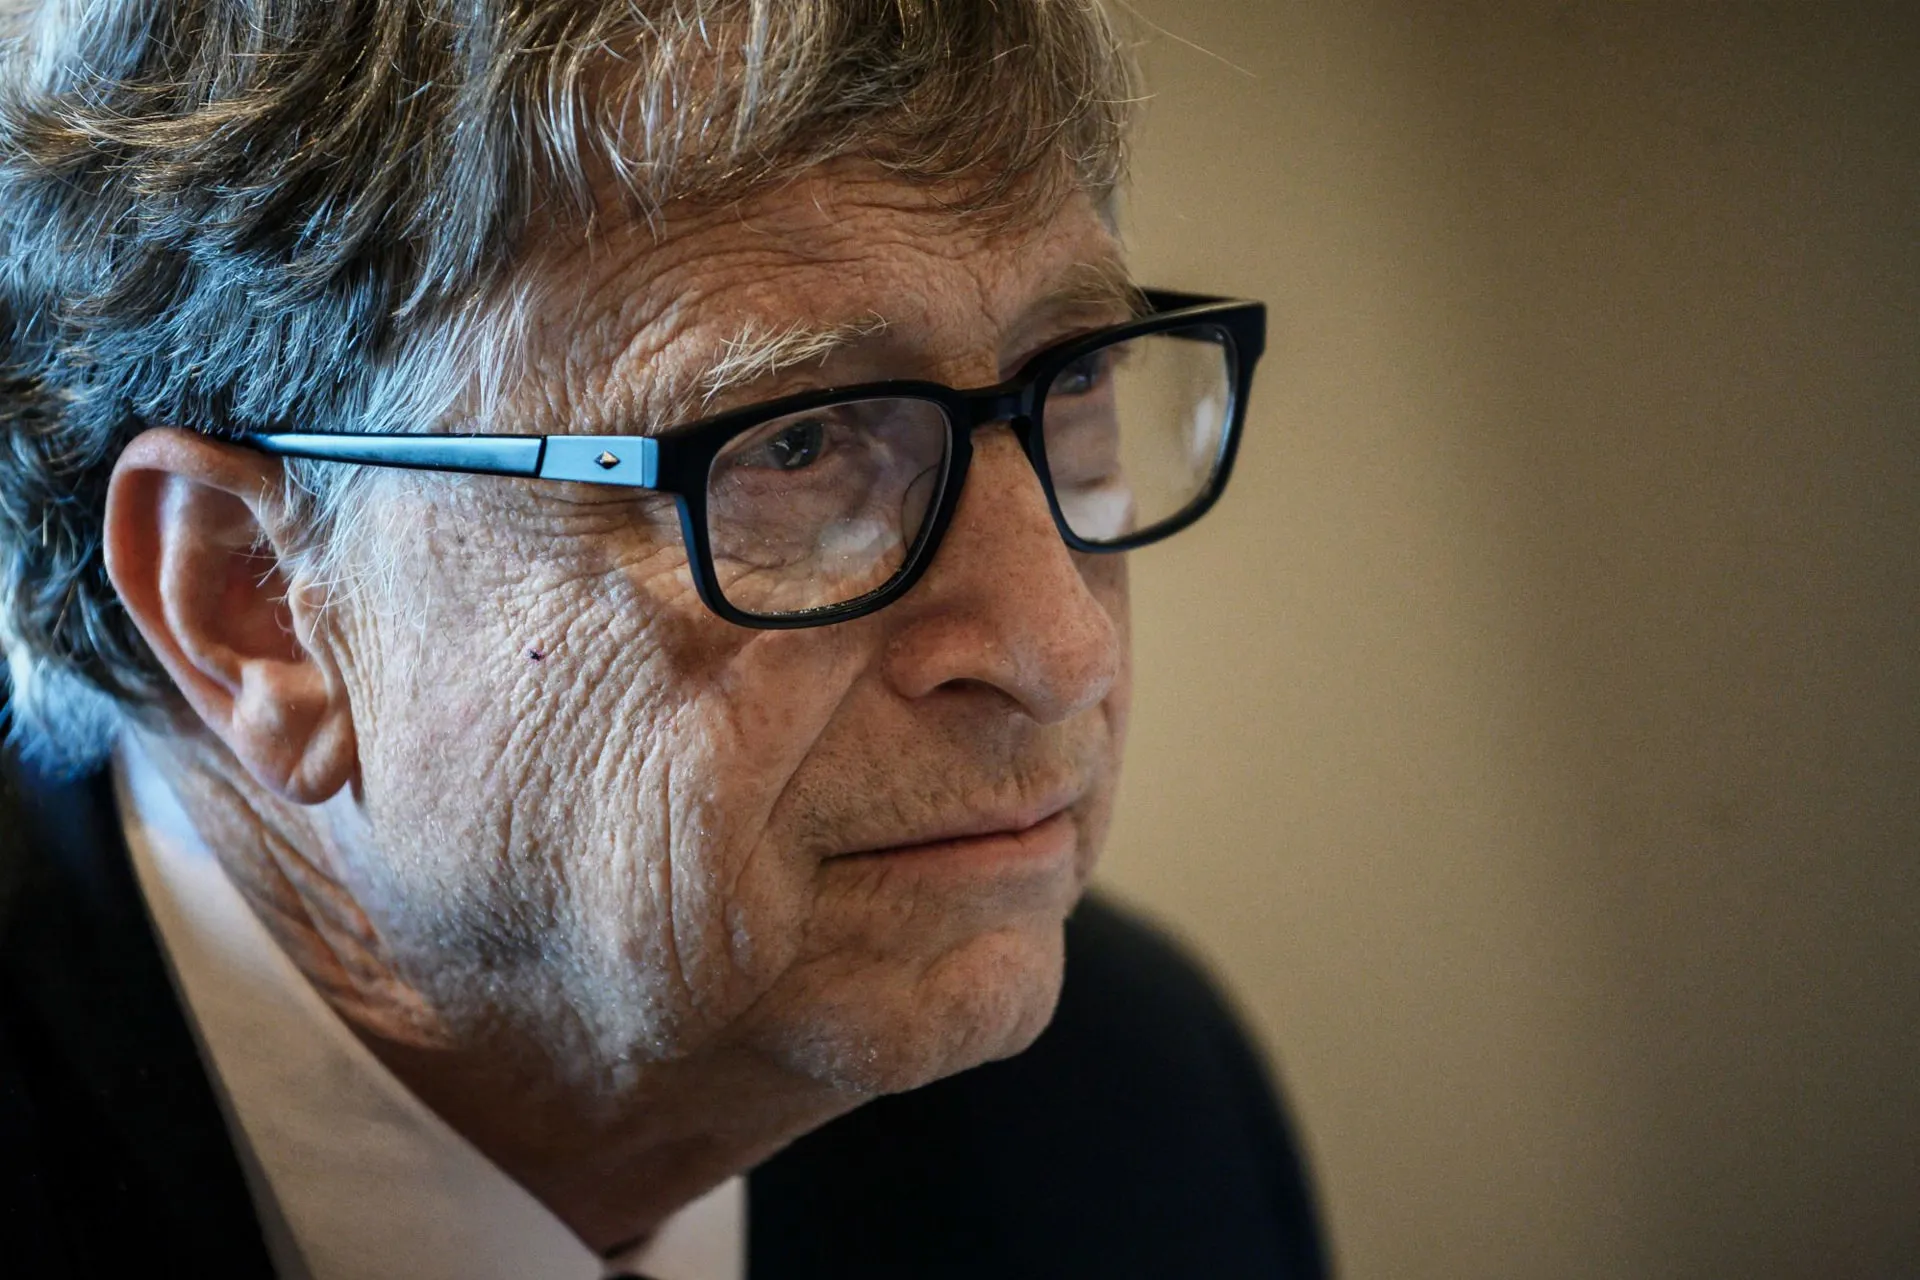 چهره غمگین بیل گیتس / Bill Gates با عینک